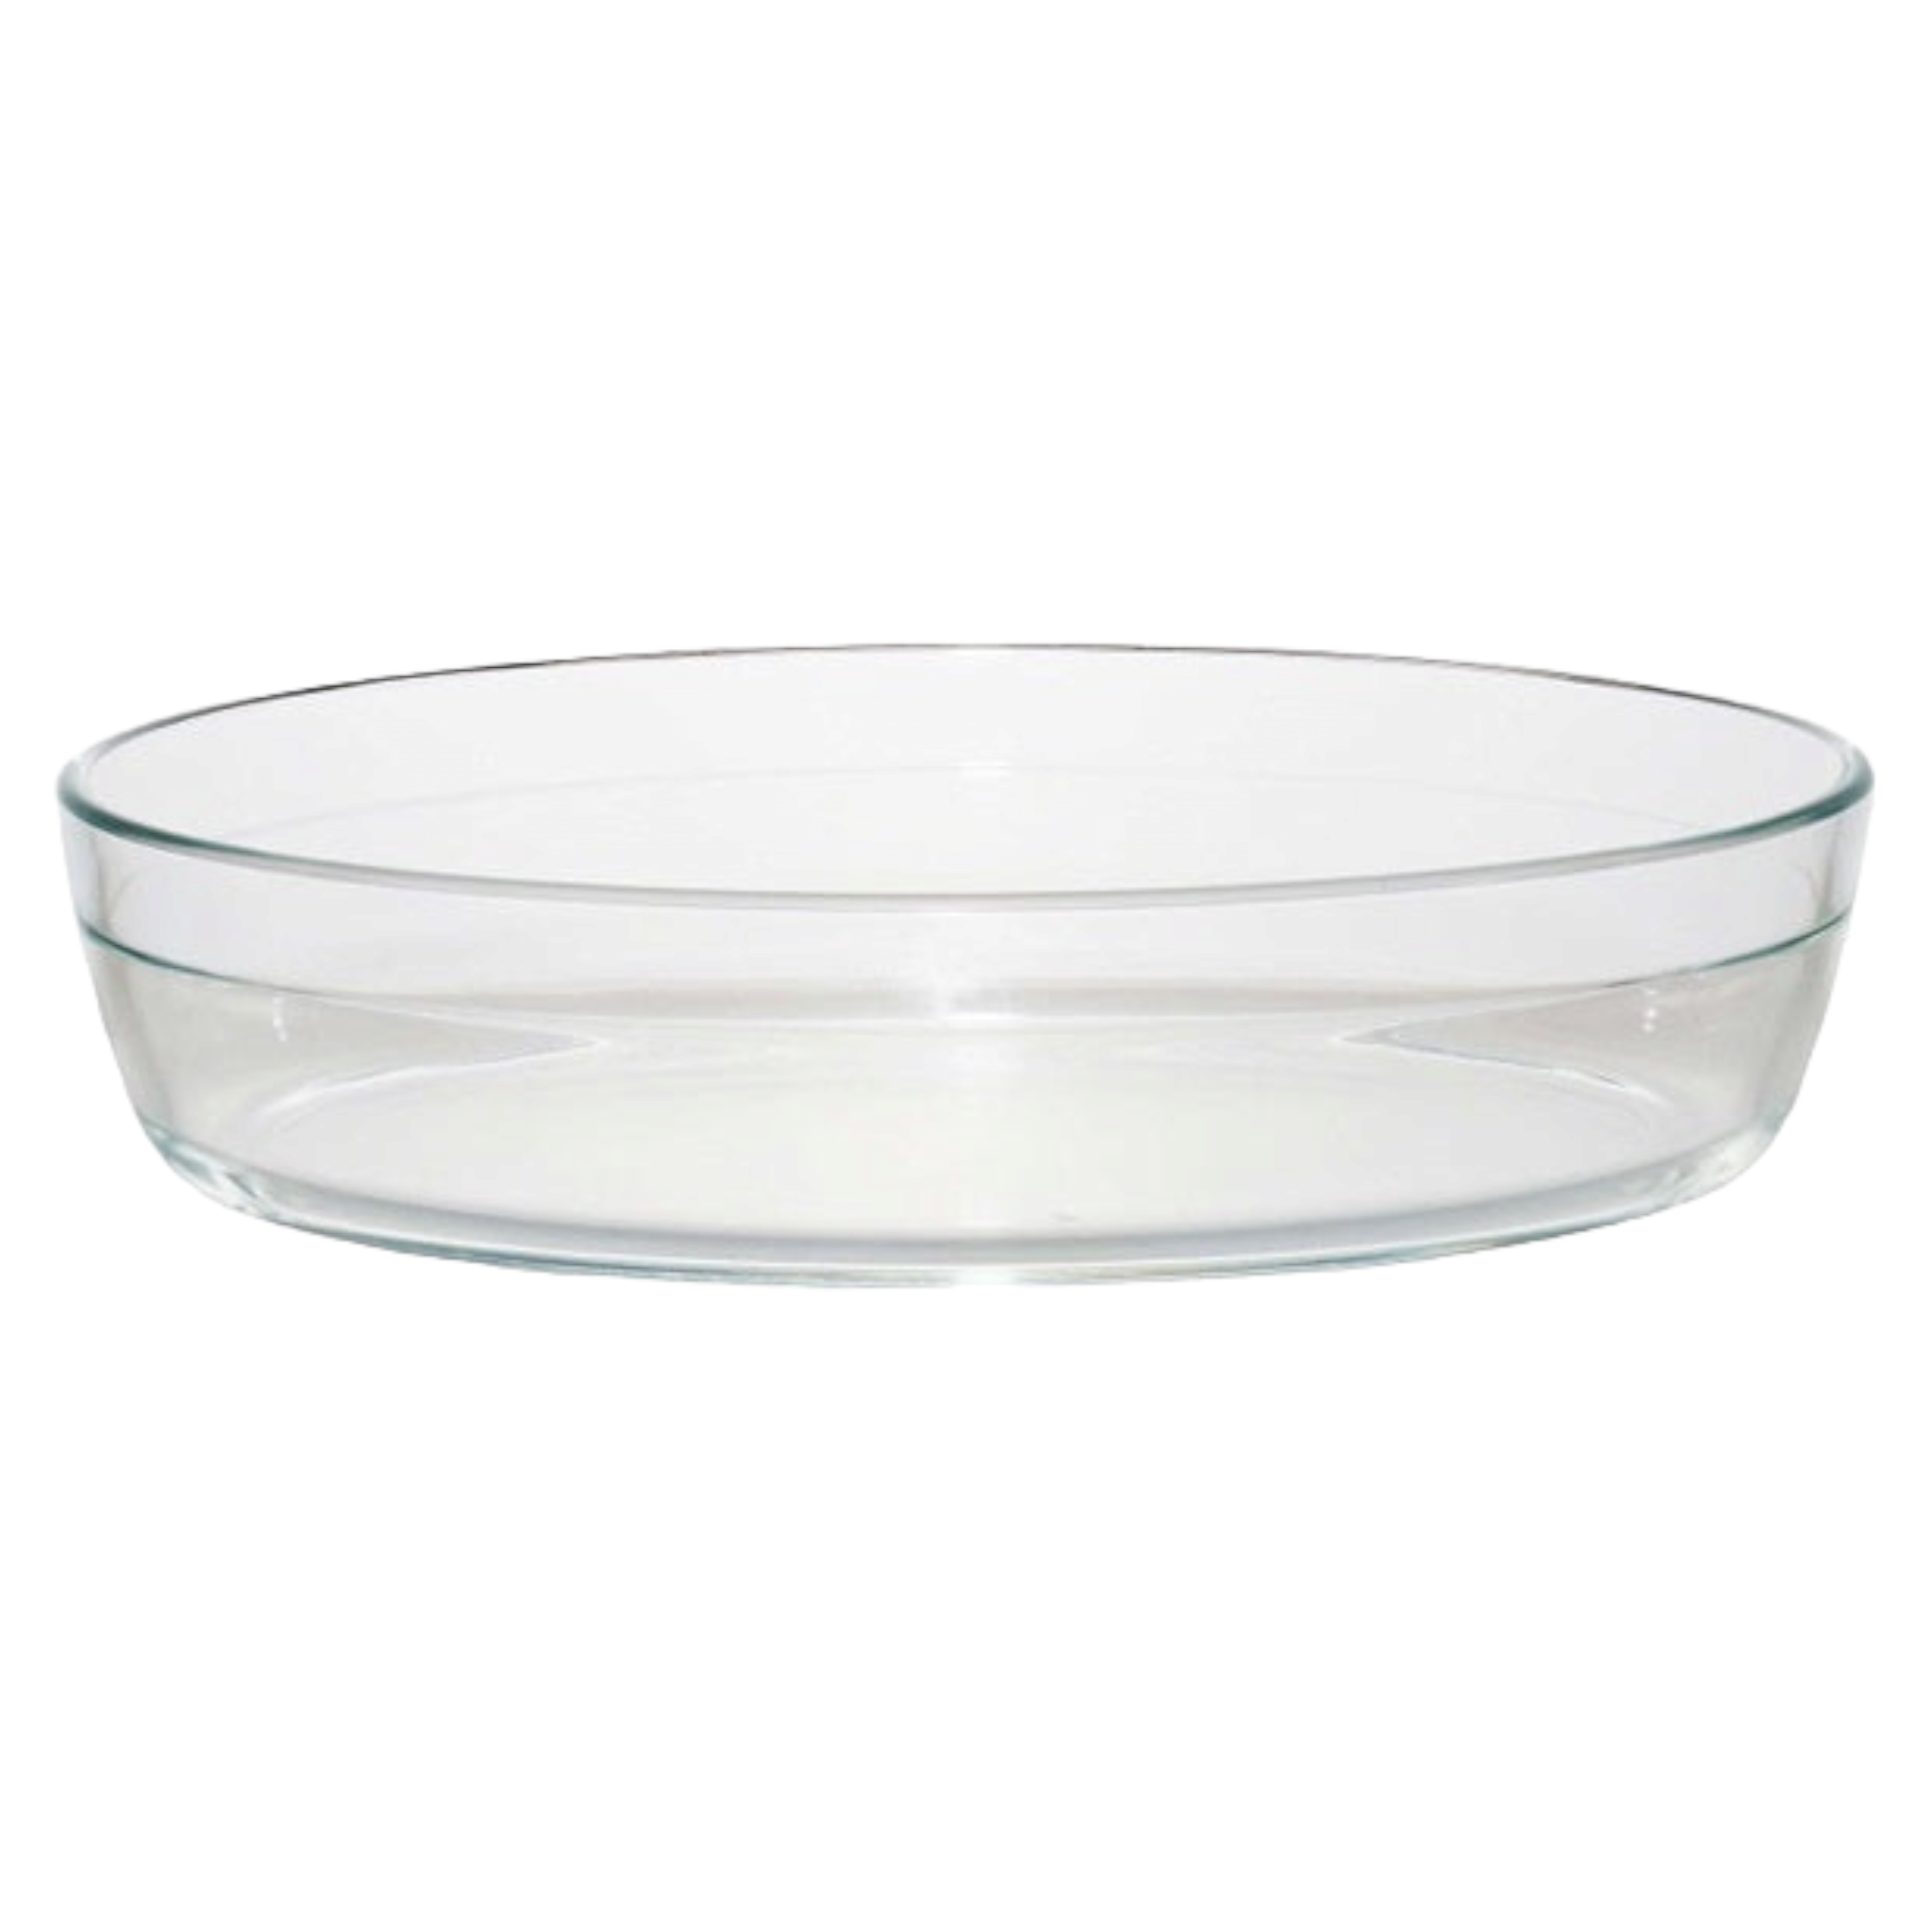 Aqua Glass Baking Tray Oval No Lid 1.6L 10346